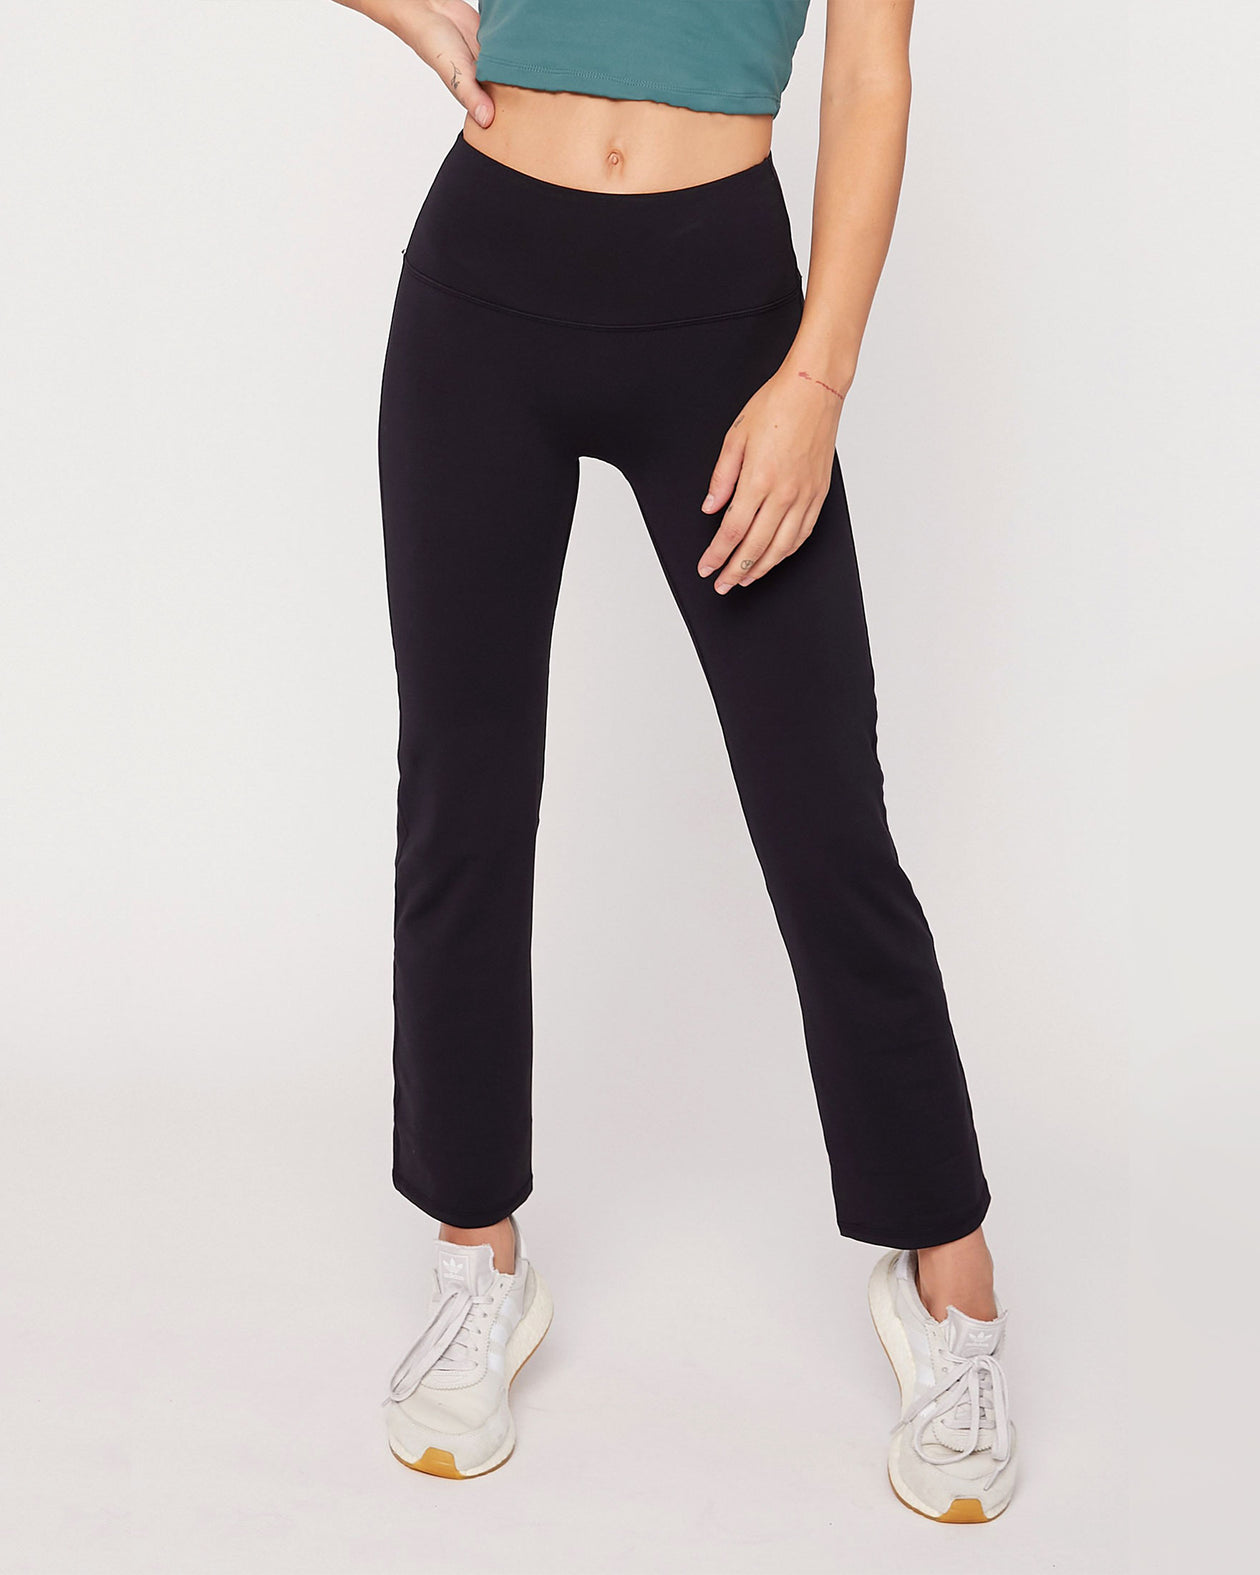  Petite Womens Bootcut Yoga Pants Long Workout  Pant,29,Black,Size XXL